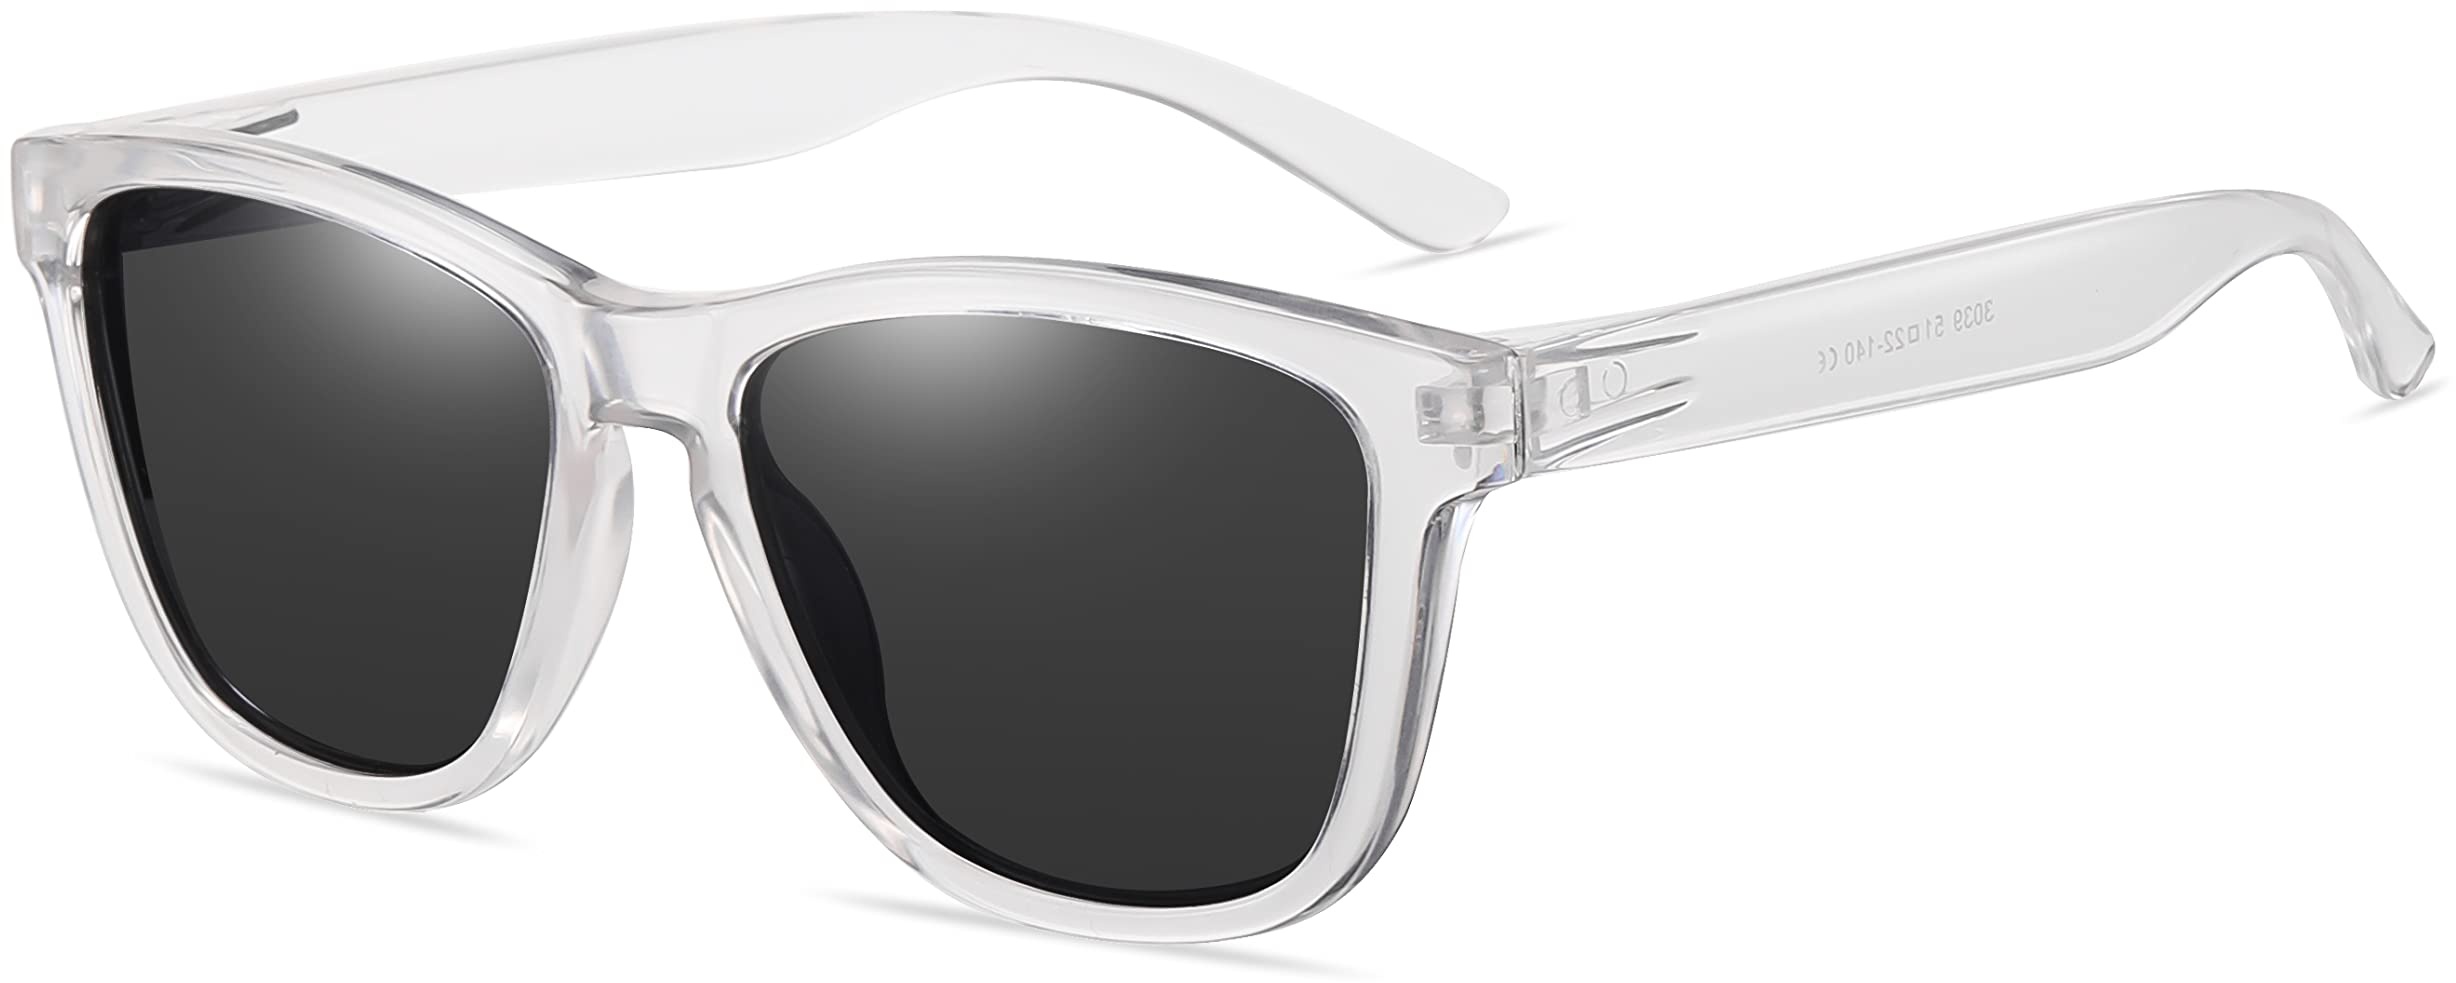 AMEXI Sonnenbrille-Herren-Damen-Polarisiert-Rechteckig-Sonnenbrillen Unisex Retro Klassische Vintage Polarisierte Brille UV400 Schutz Classic Sunglasses Eckig für Fahren